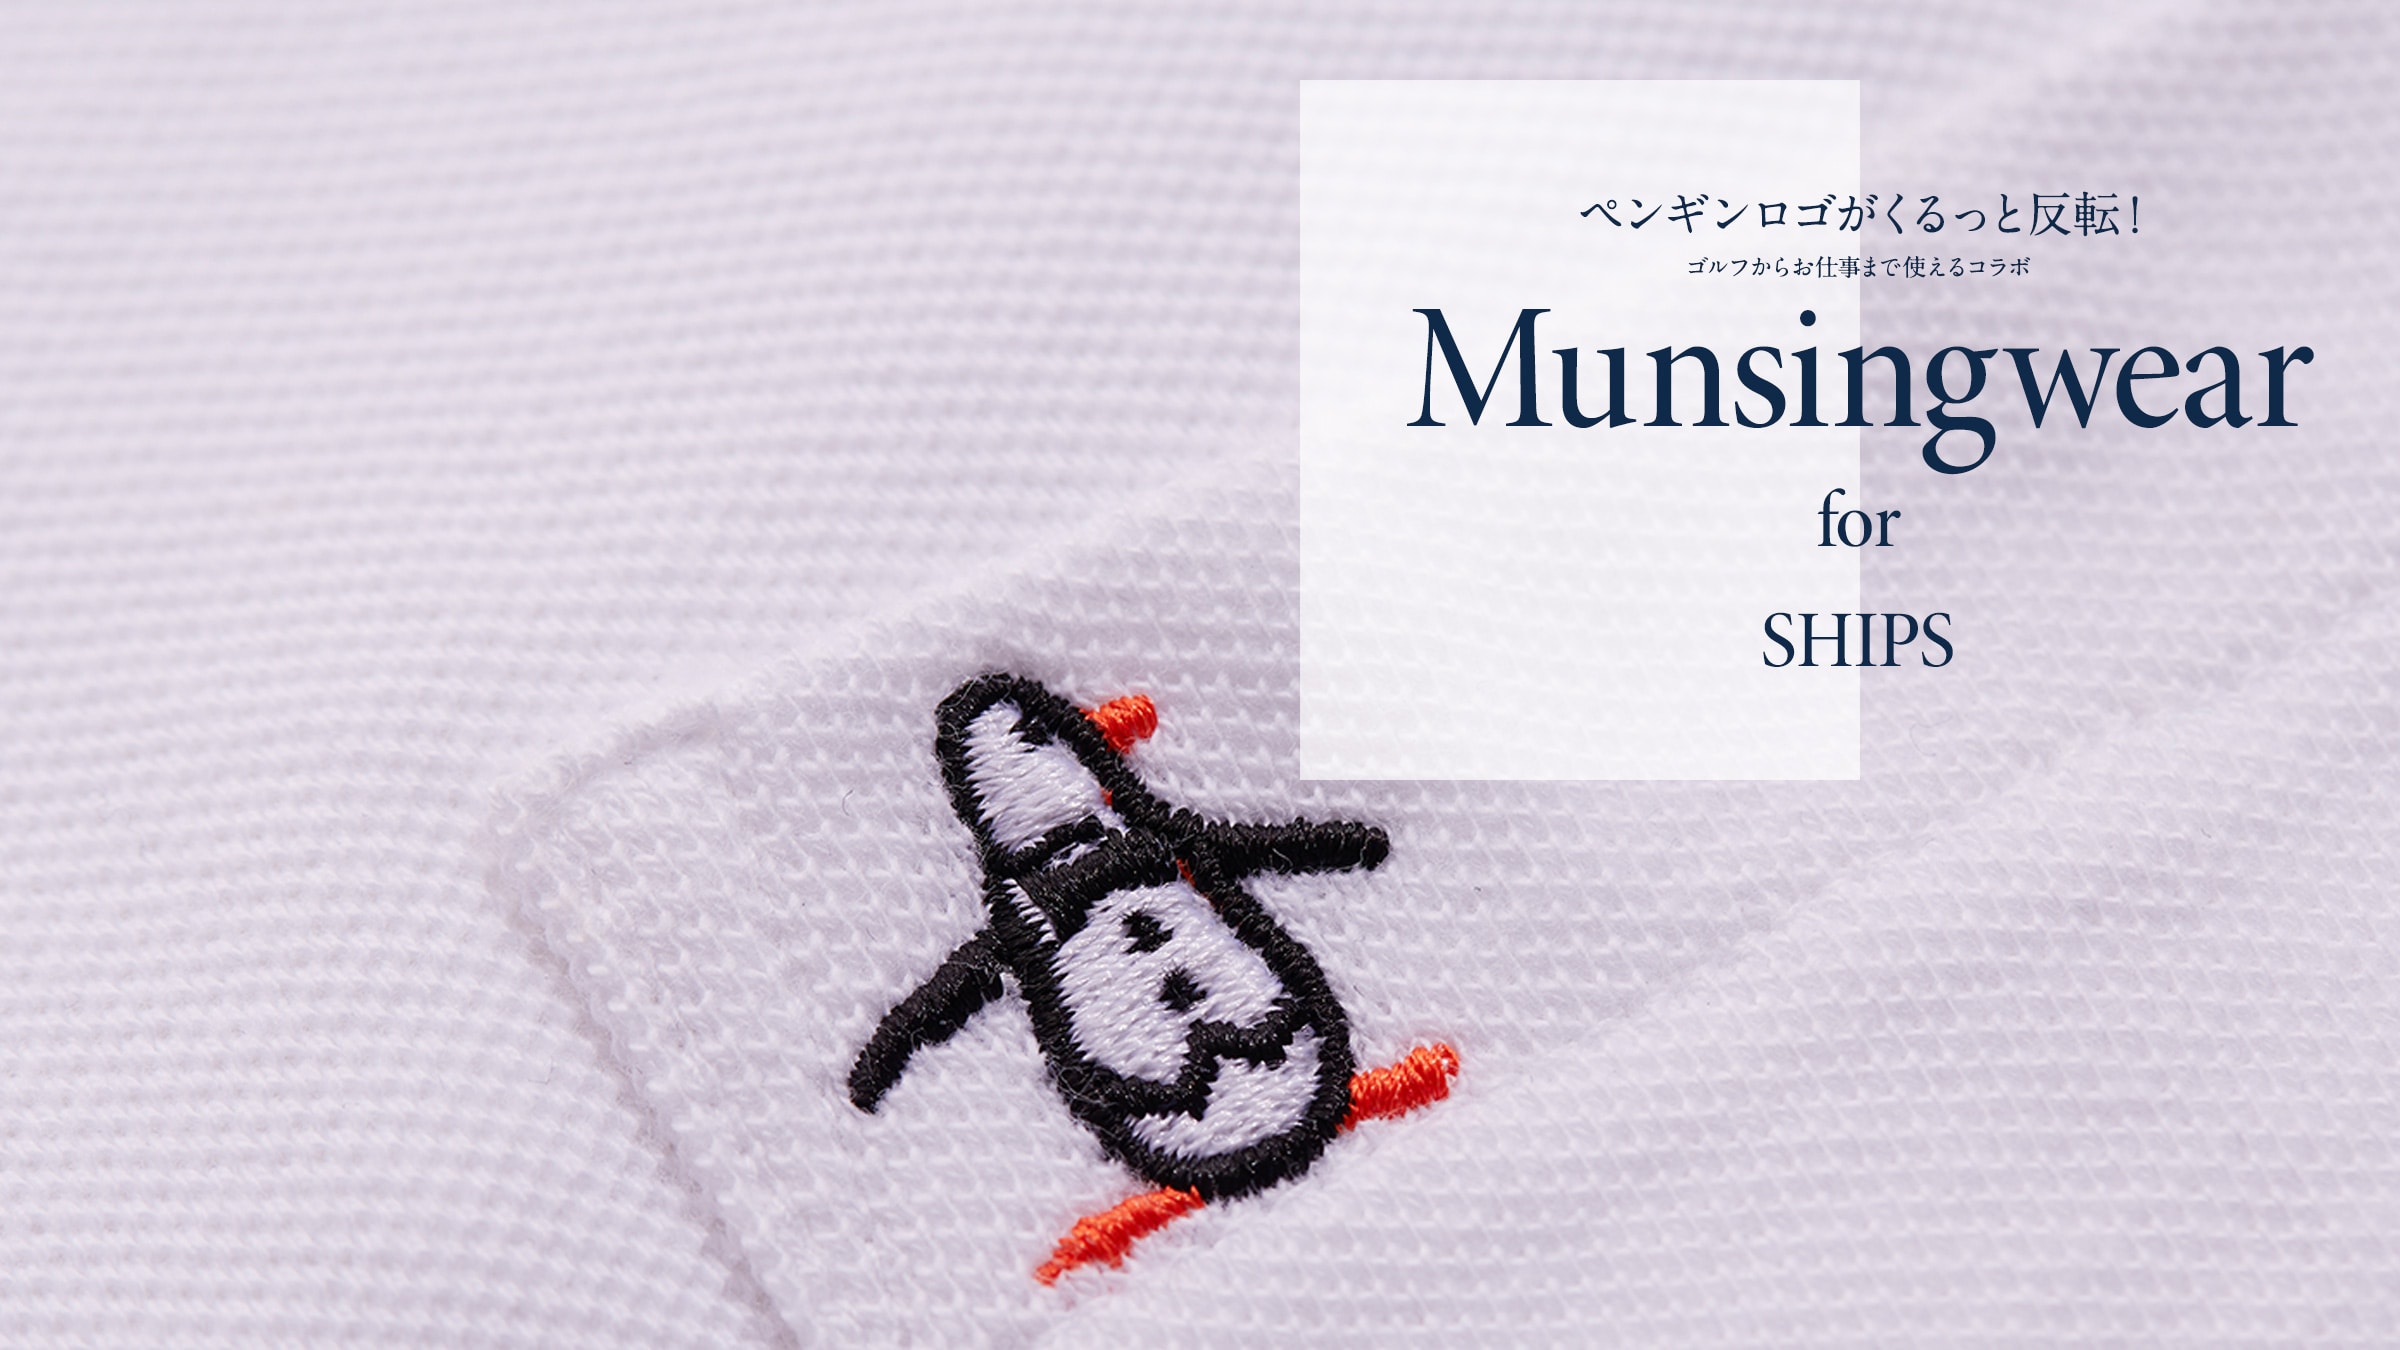 yMSƔ]ISt炨d܂ŎgR{Munsingwear for SHIPS